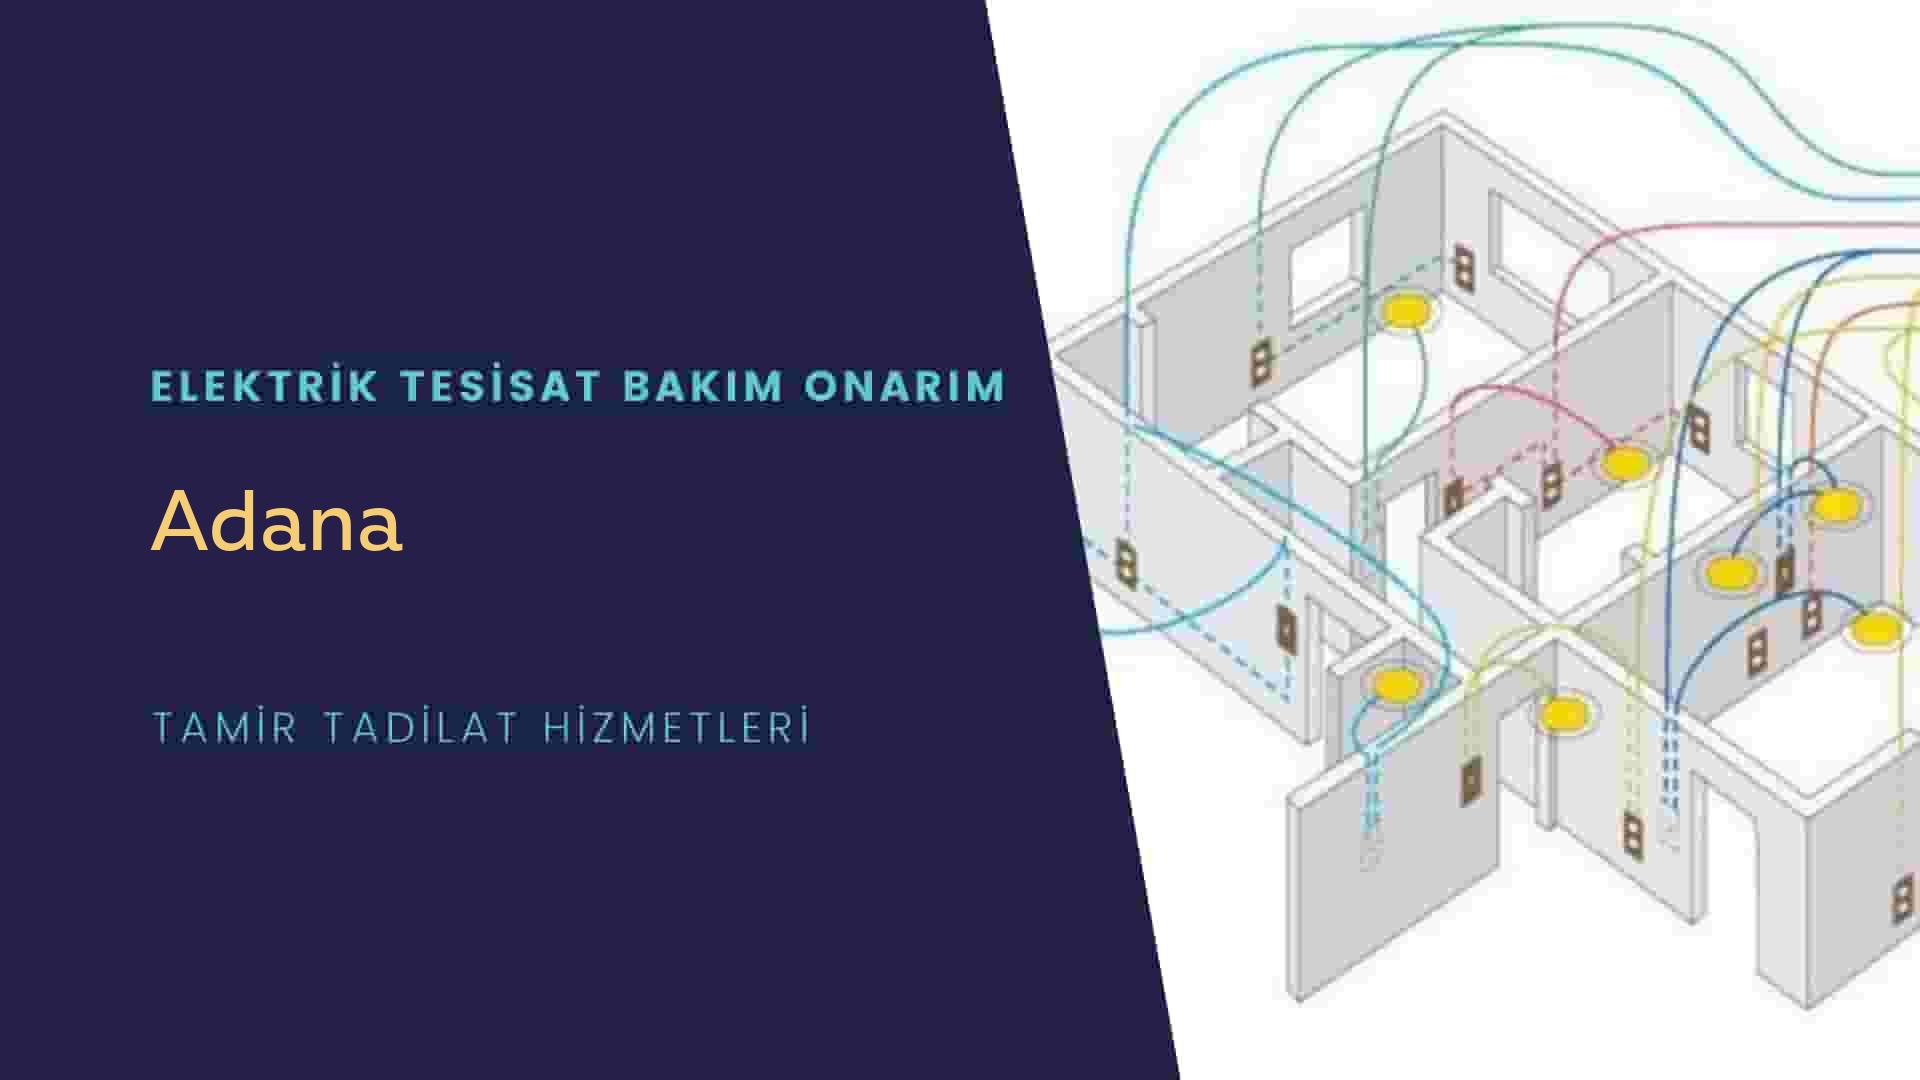 Adana'da elektrik tesisatı ustalarımı arıyorsunuz doğru adrestenizi Adana elektrik tesisatı ustalarımız 7/24 sizlere hizmet vermekten mutluluk duyar.